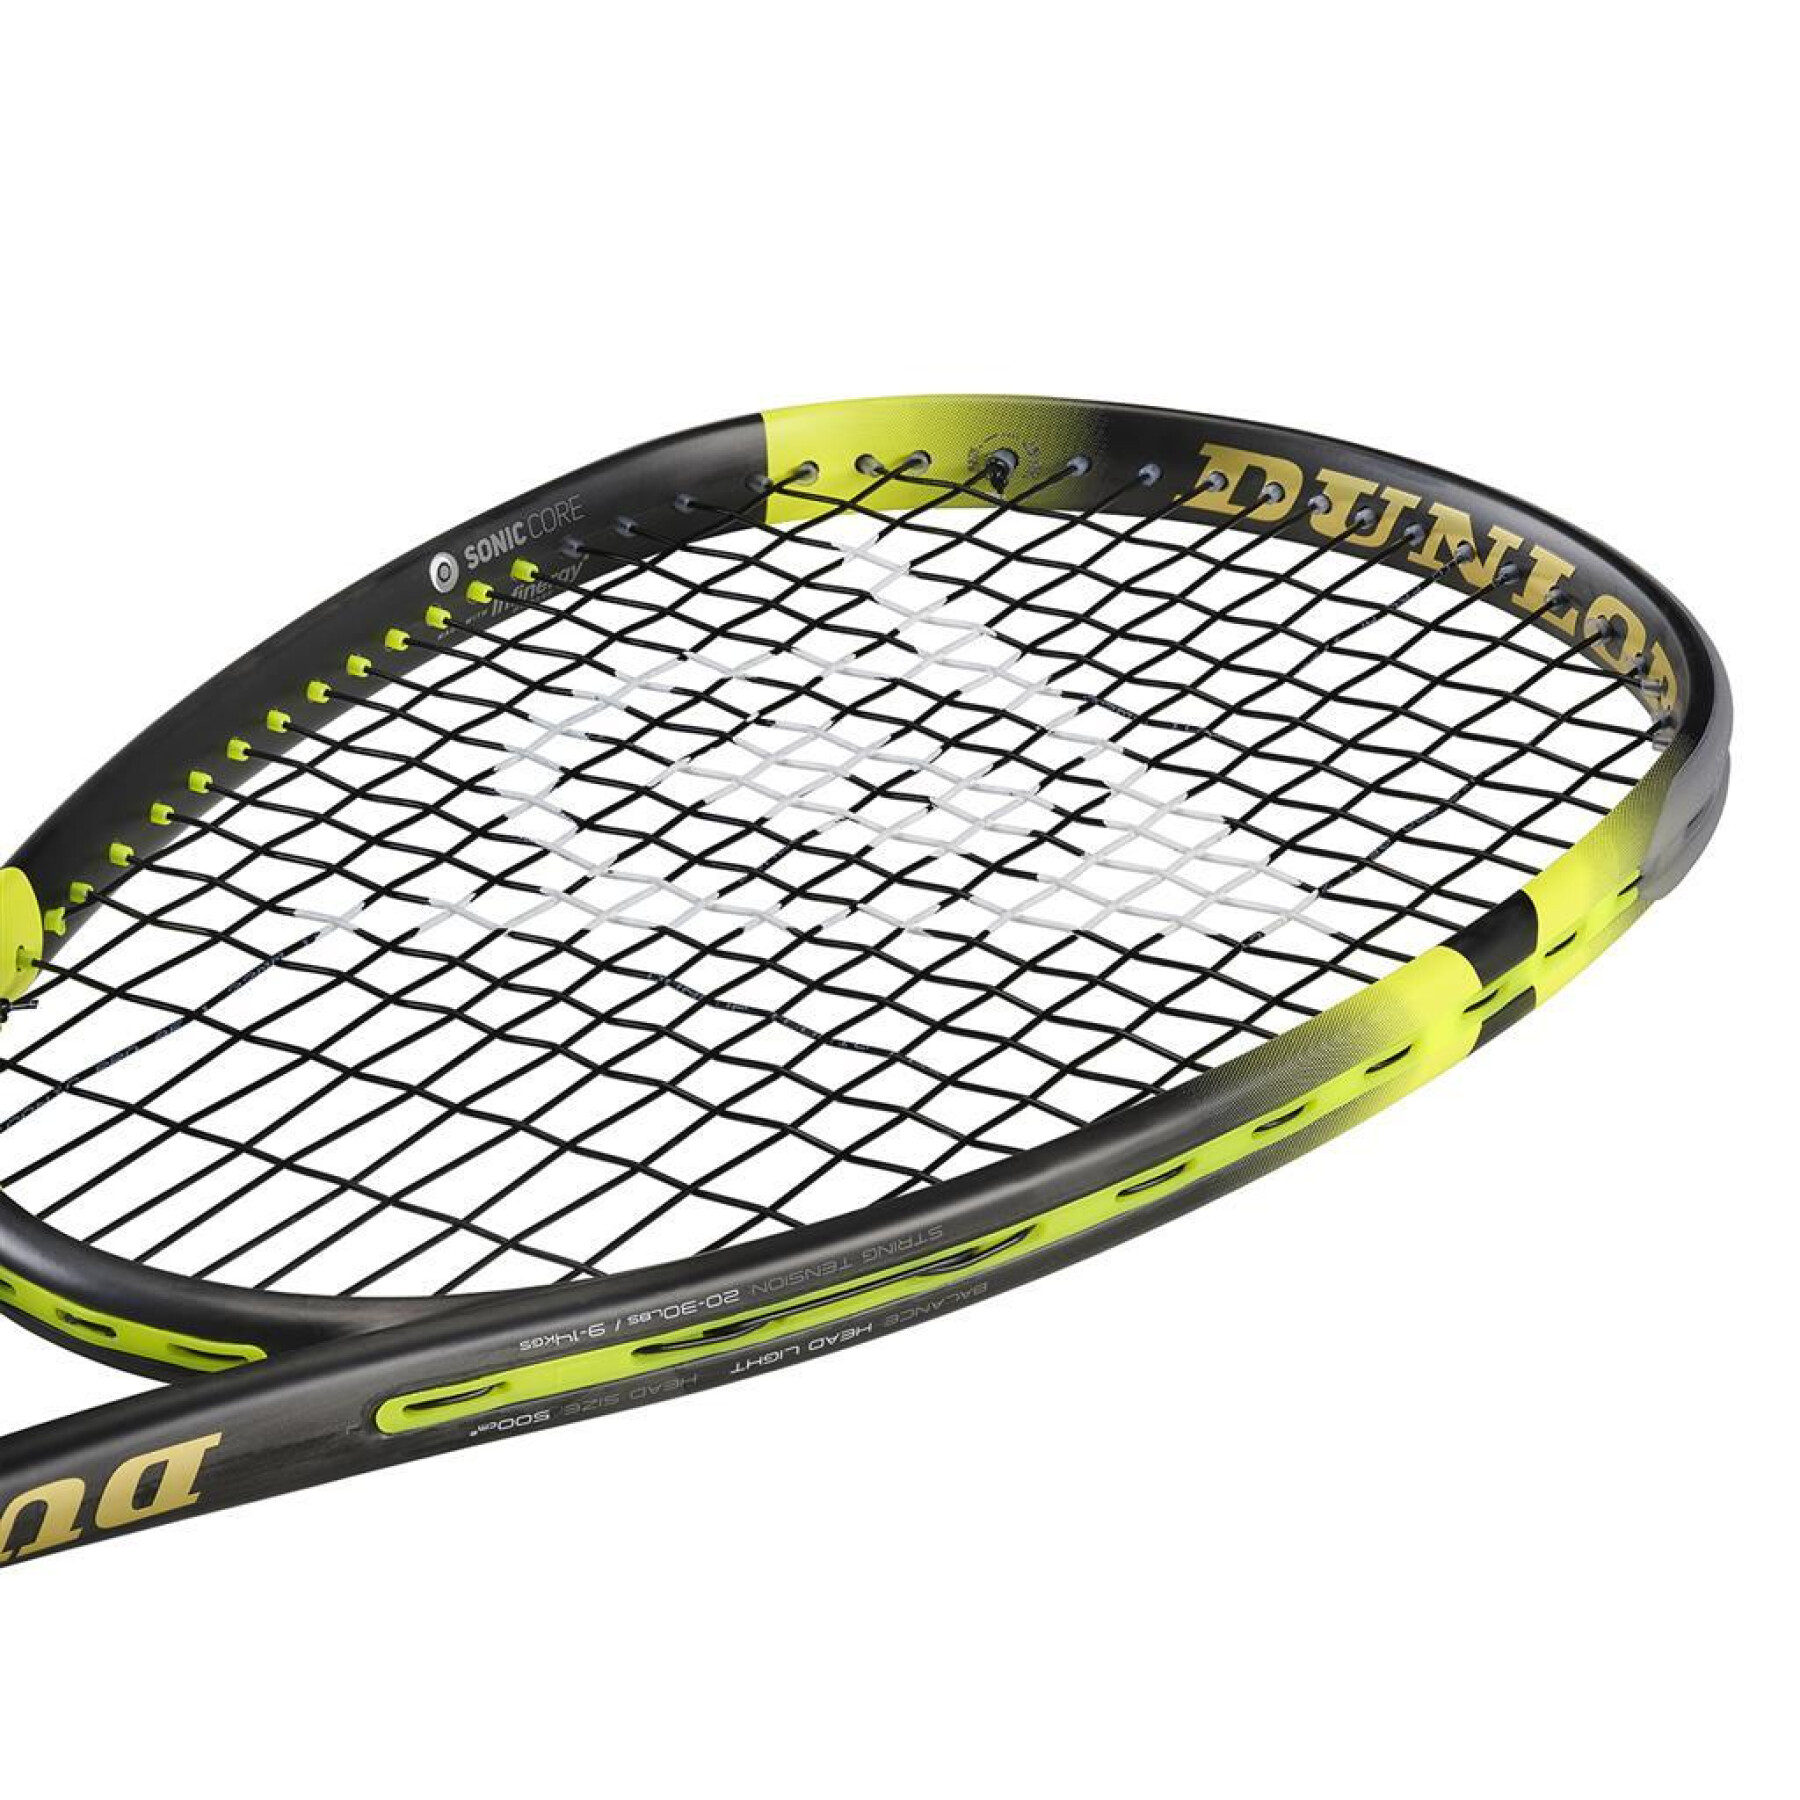 Raquete de squash Dunlop Sonic Core Ultimate 132